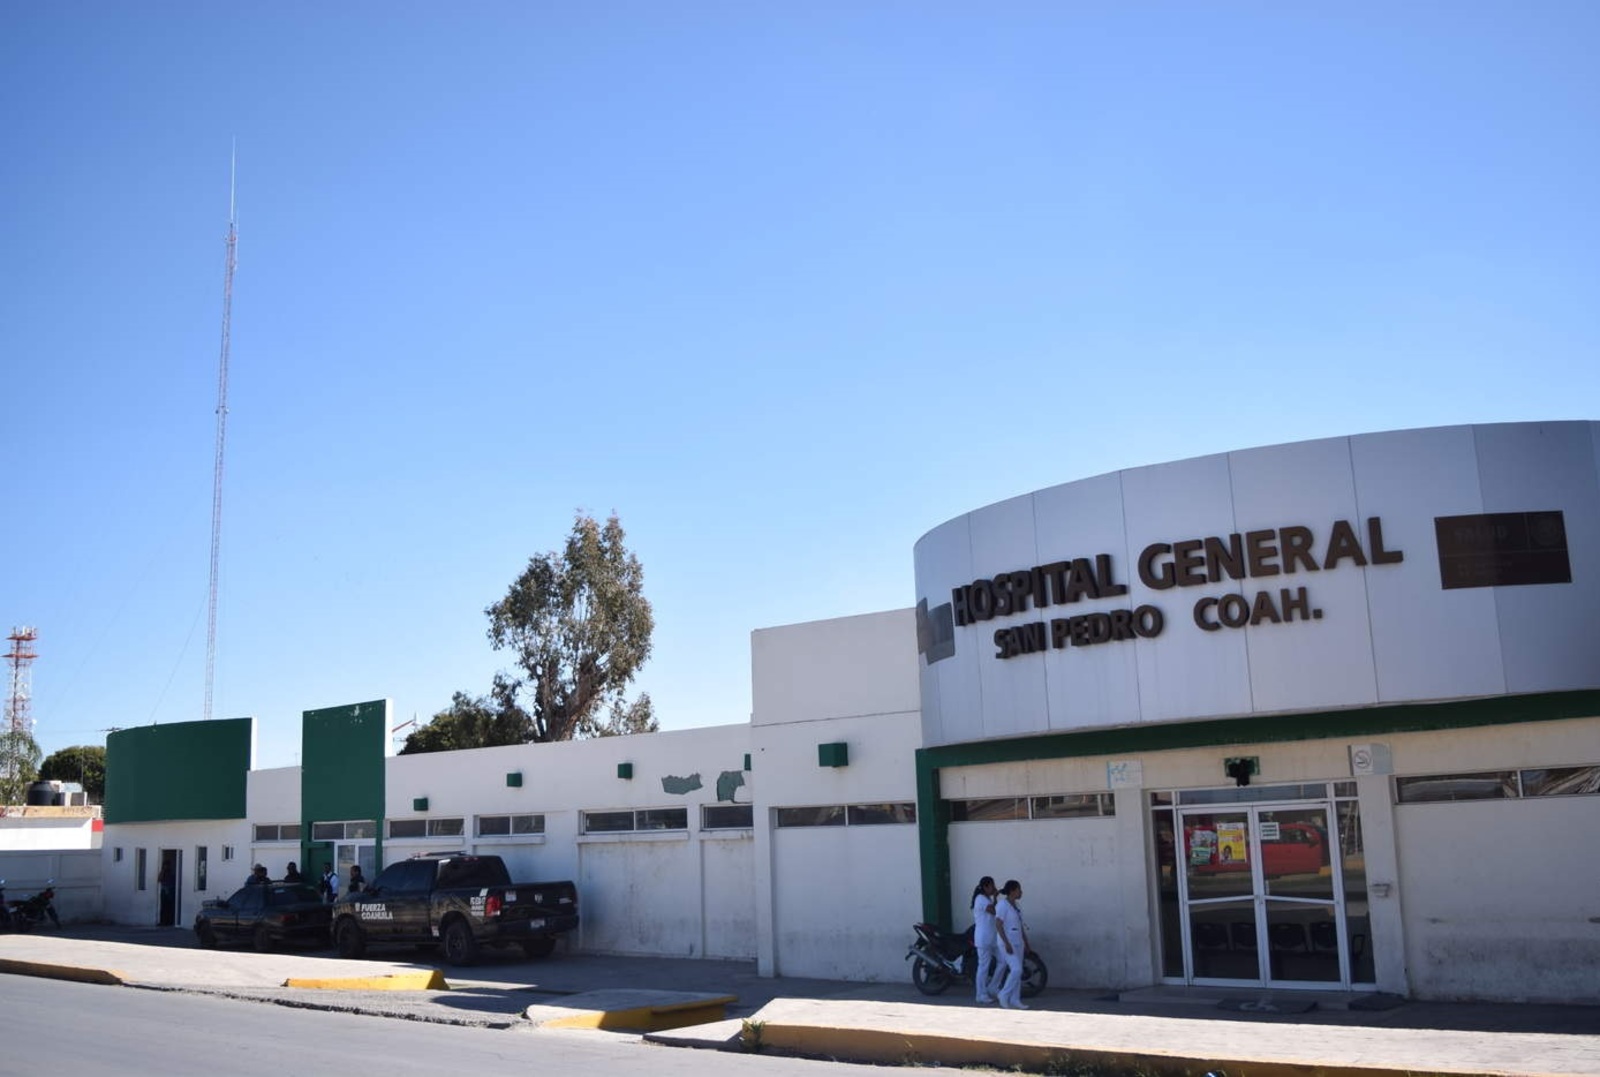 Apuñalan a joven en ejido de San Pedro, el lesionado fue ingresado al Hospital regional del municipio.